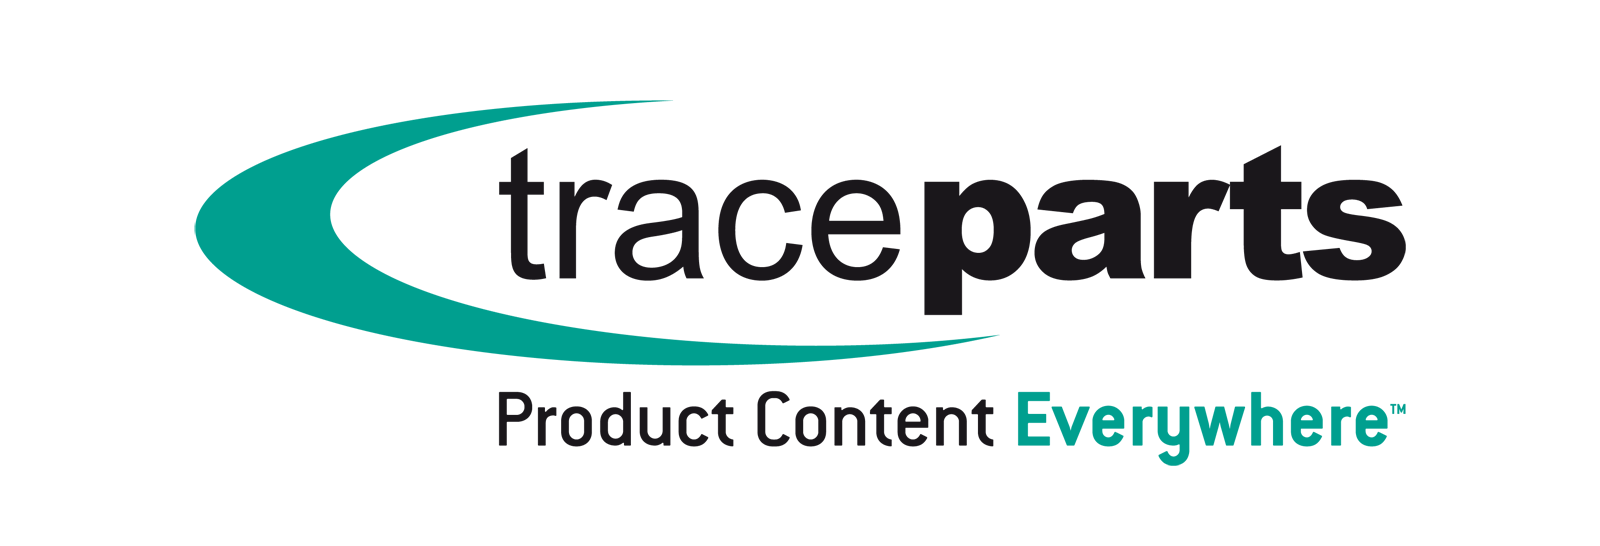 TraceParts logo